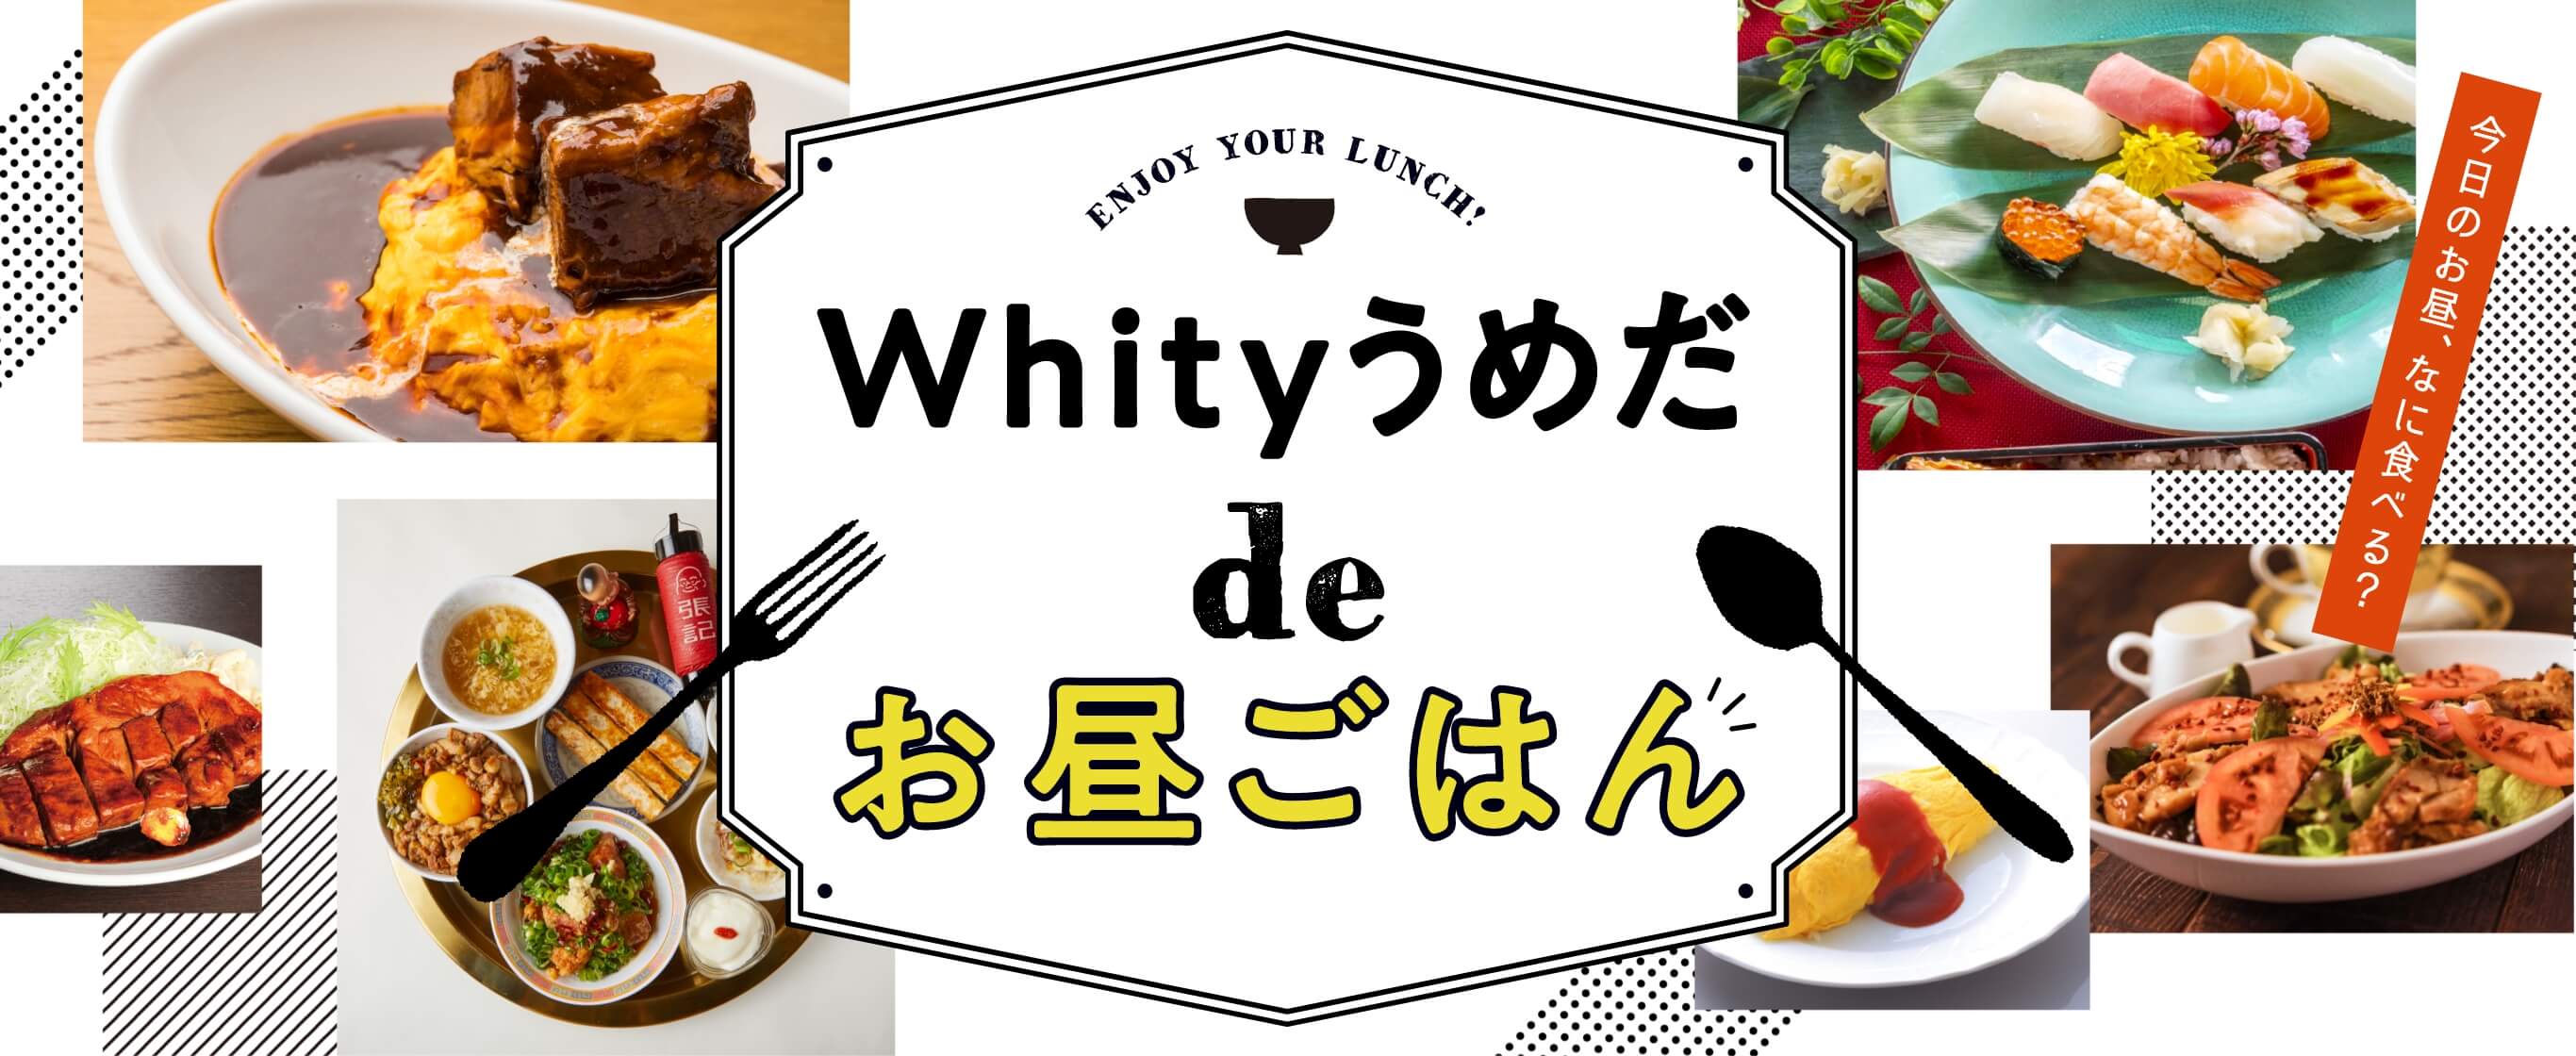 Whity Umeda de Meal